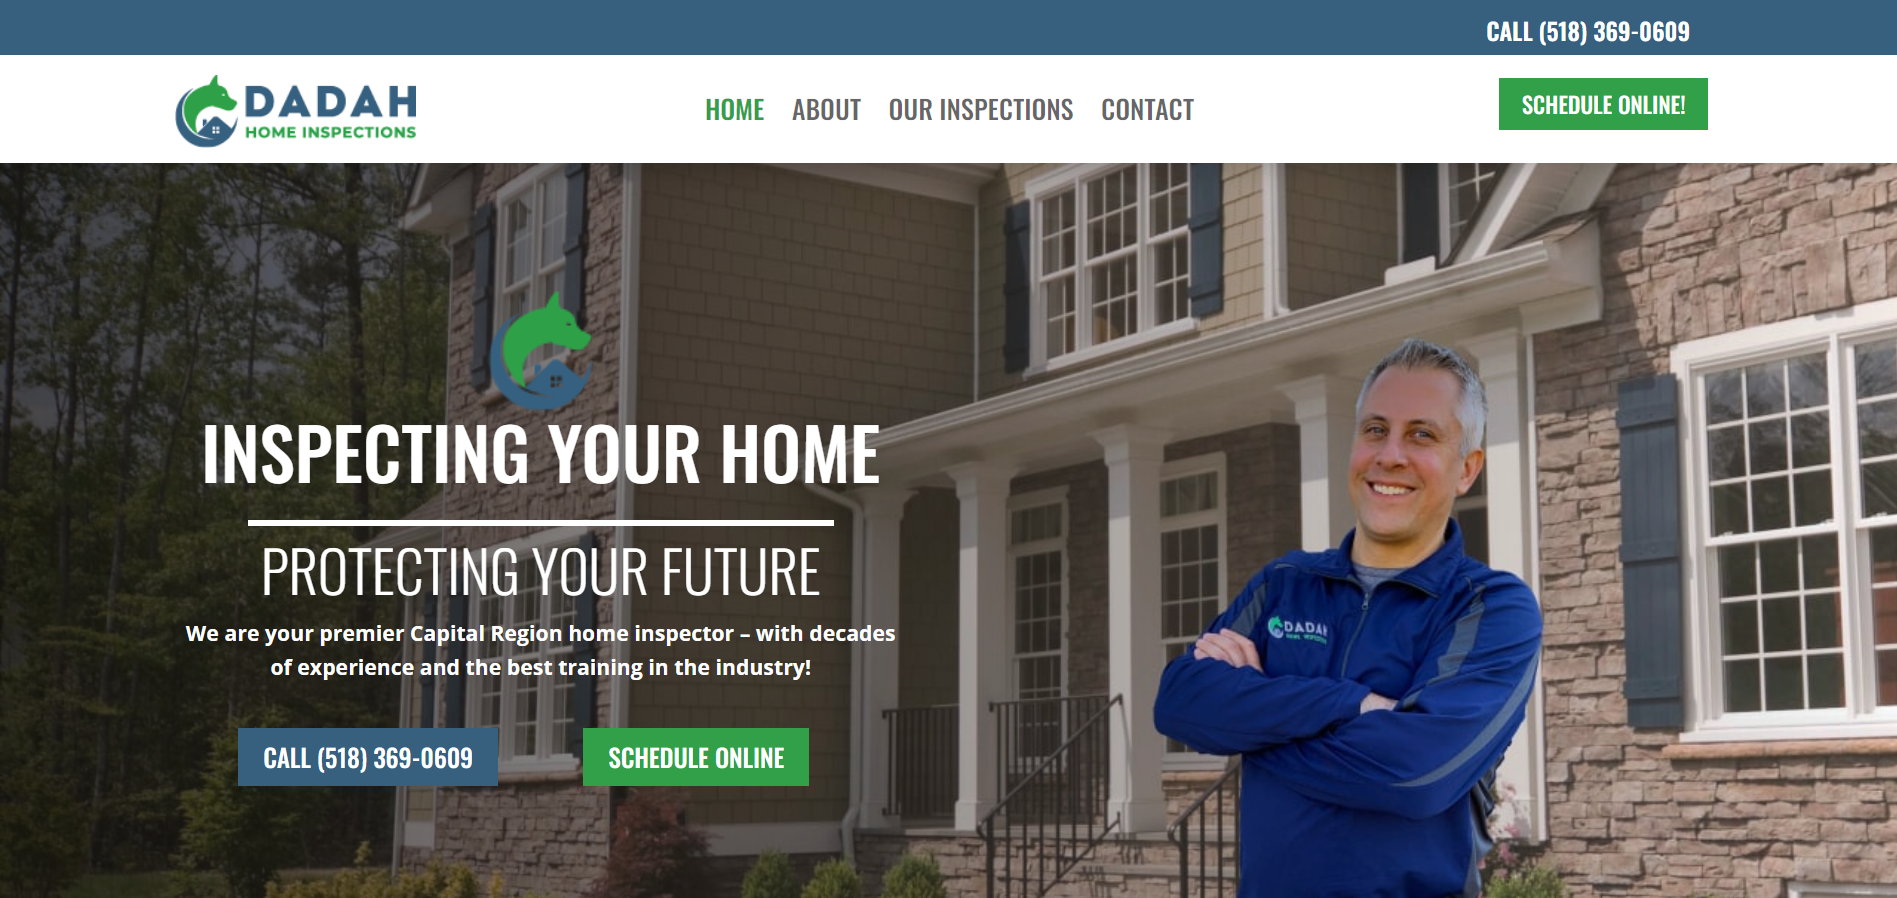 Website Design for Home Inspector